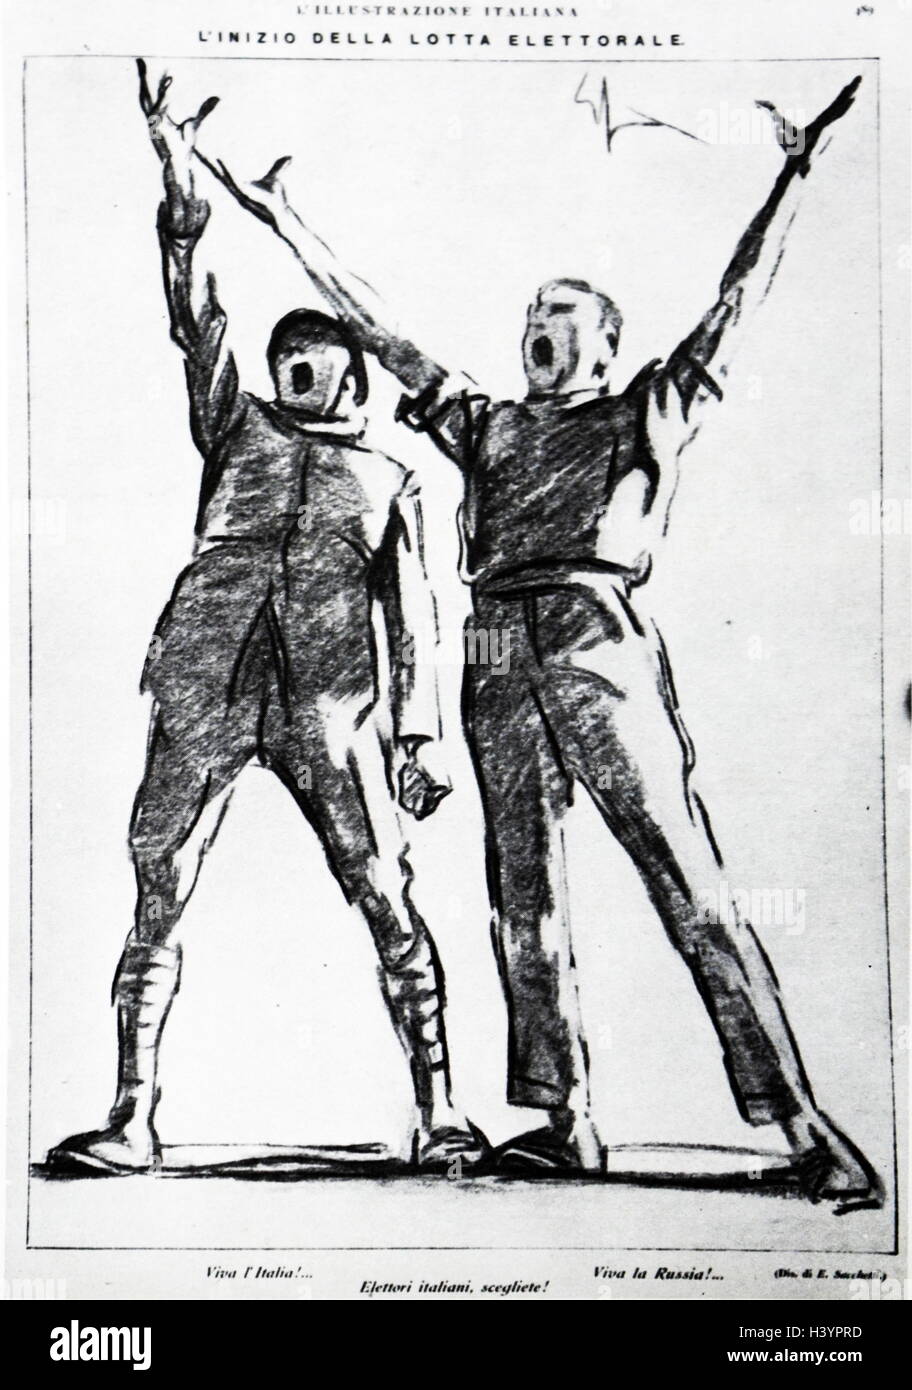 Partito comunista italiano, illustrazione di propaganda al momento del 1921 Elezione in Italia. Da "Illustrazione Italiana' 24 aprile 1921. Foto Stock